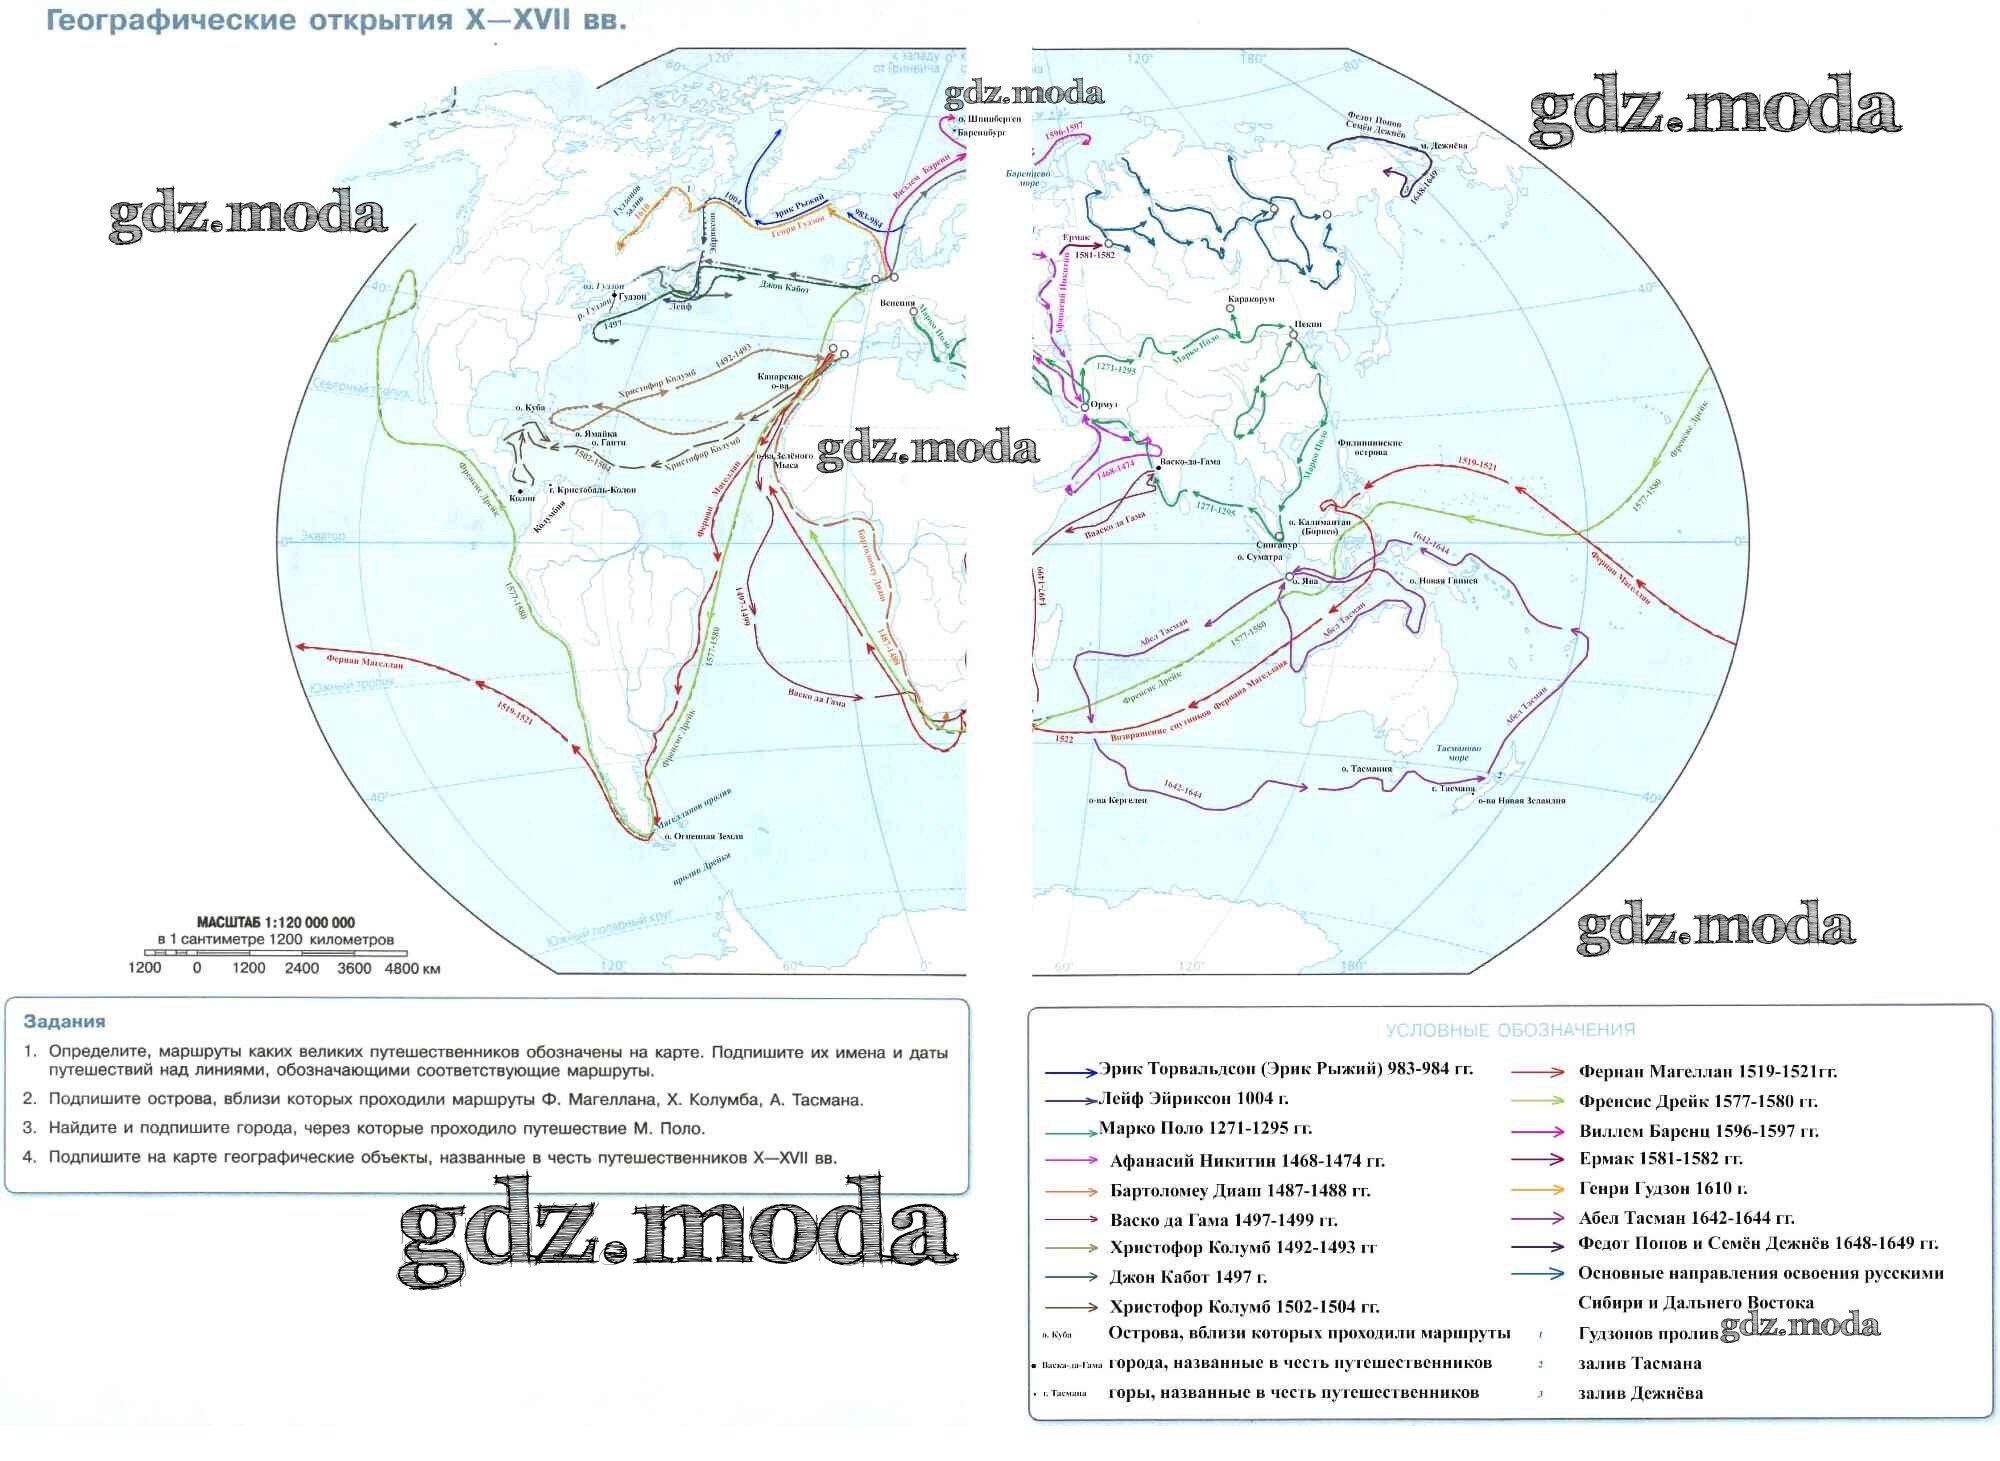 Контурная карта географических открытий 10 17 веков